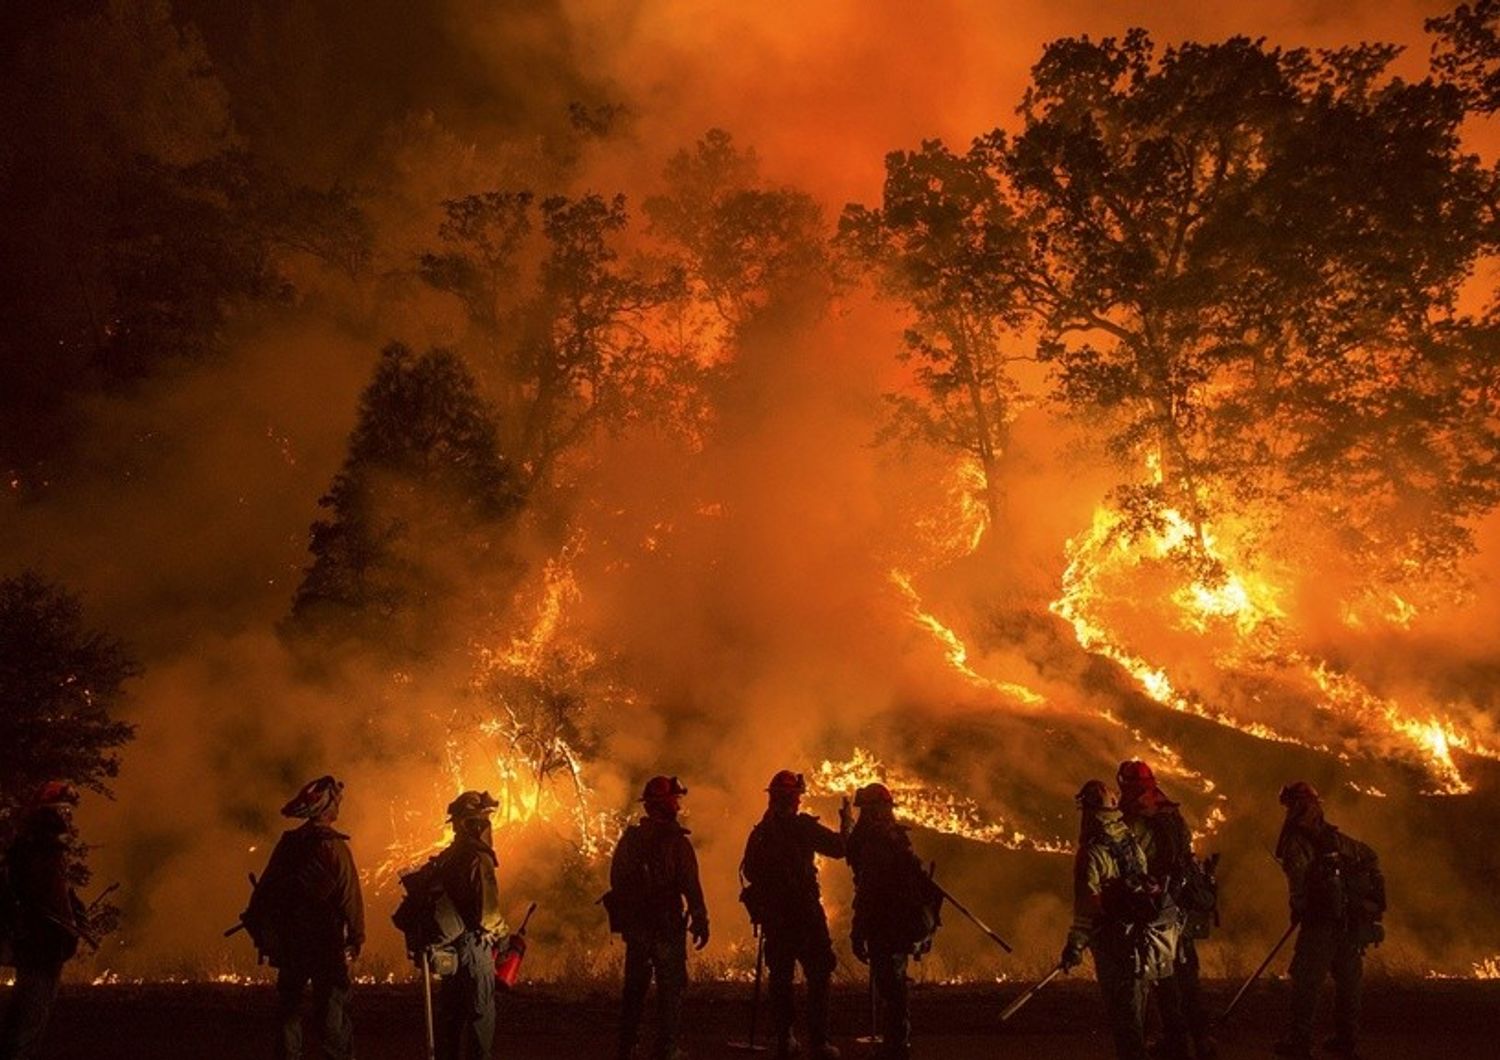 La California in fiamme, stato d'emergenza e 4 pompieri feriti - FOTO e VIDEO